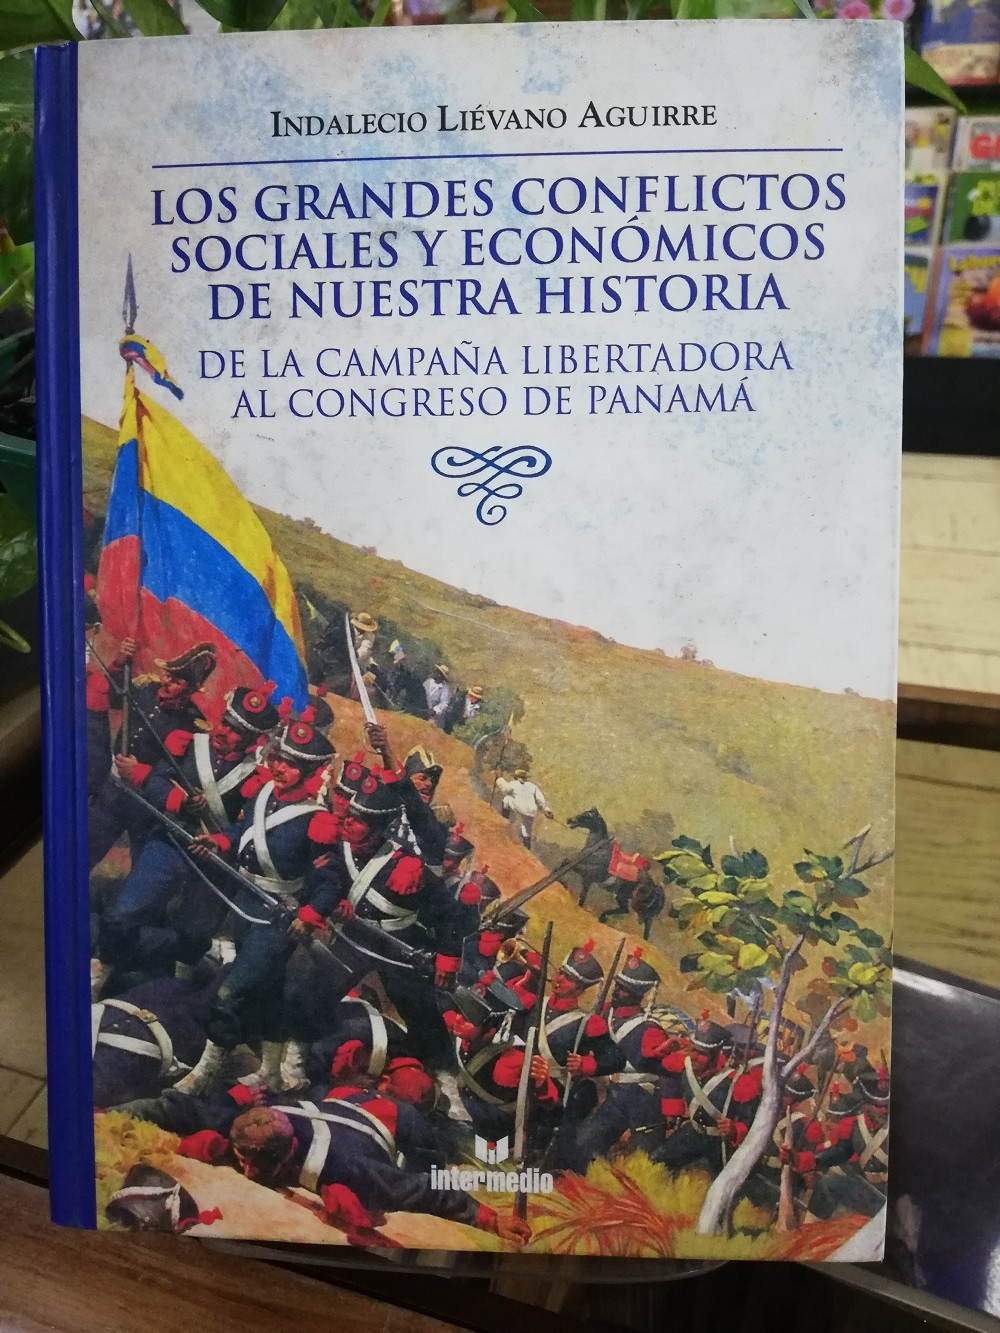 Imagen LOS GRANDES CONFLICTOS SOCIALES Y ECONÓMICOS DE NUESTRA HISTORIA TOMO 2 - INDALECIO LIEVANO AGUIRRE 1